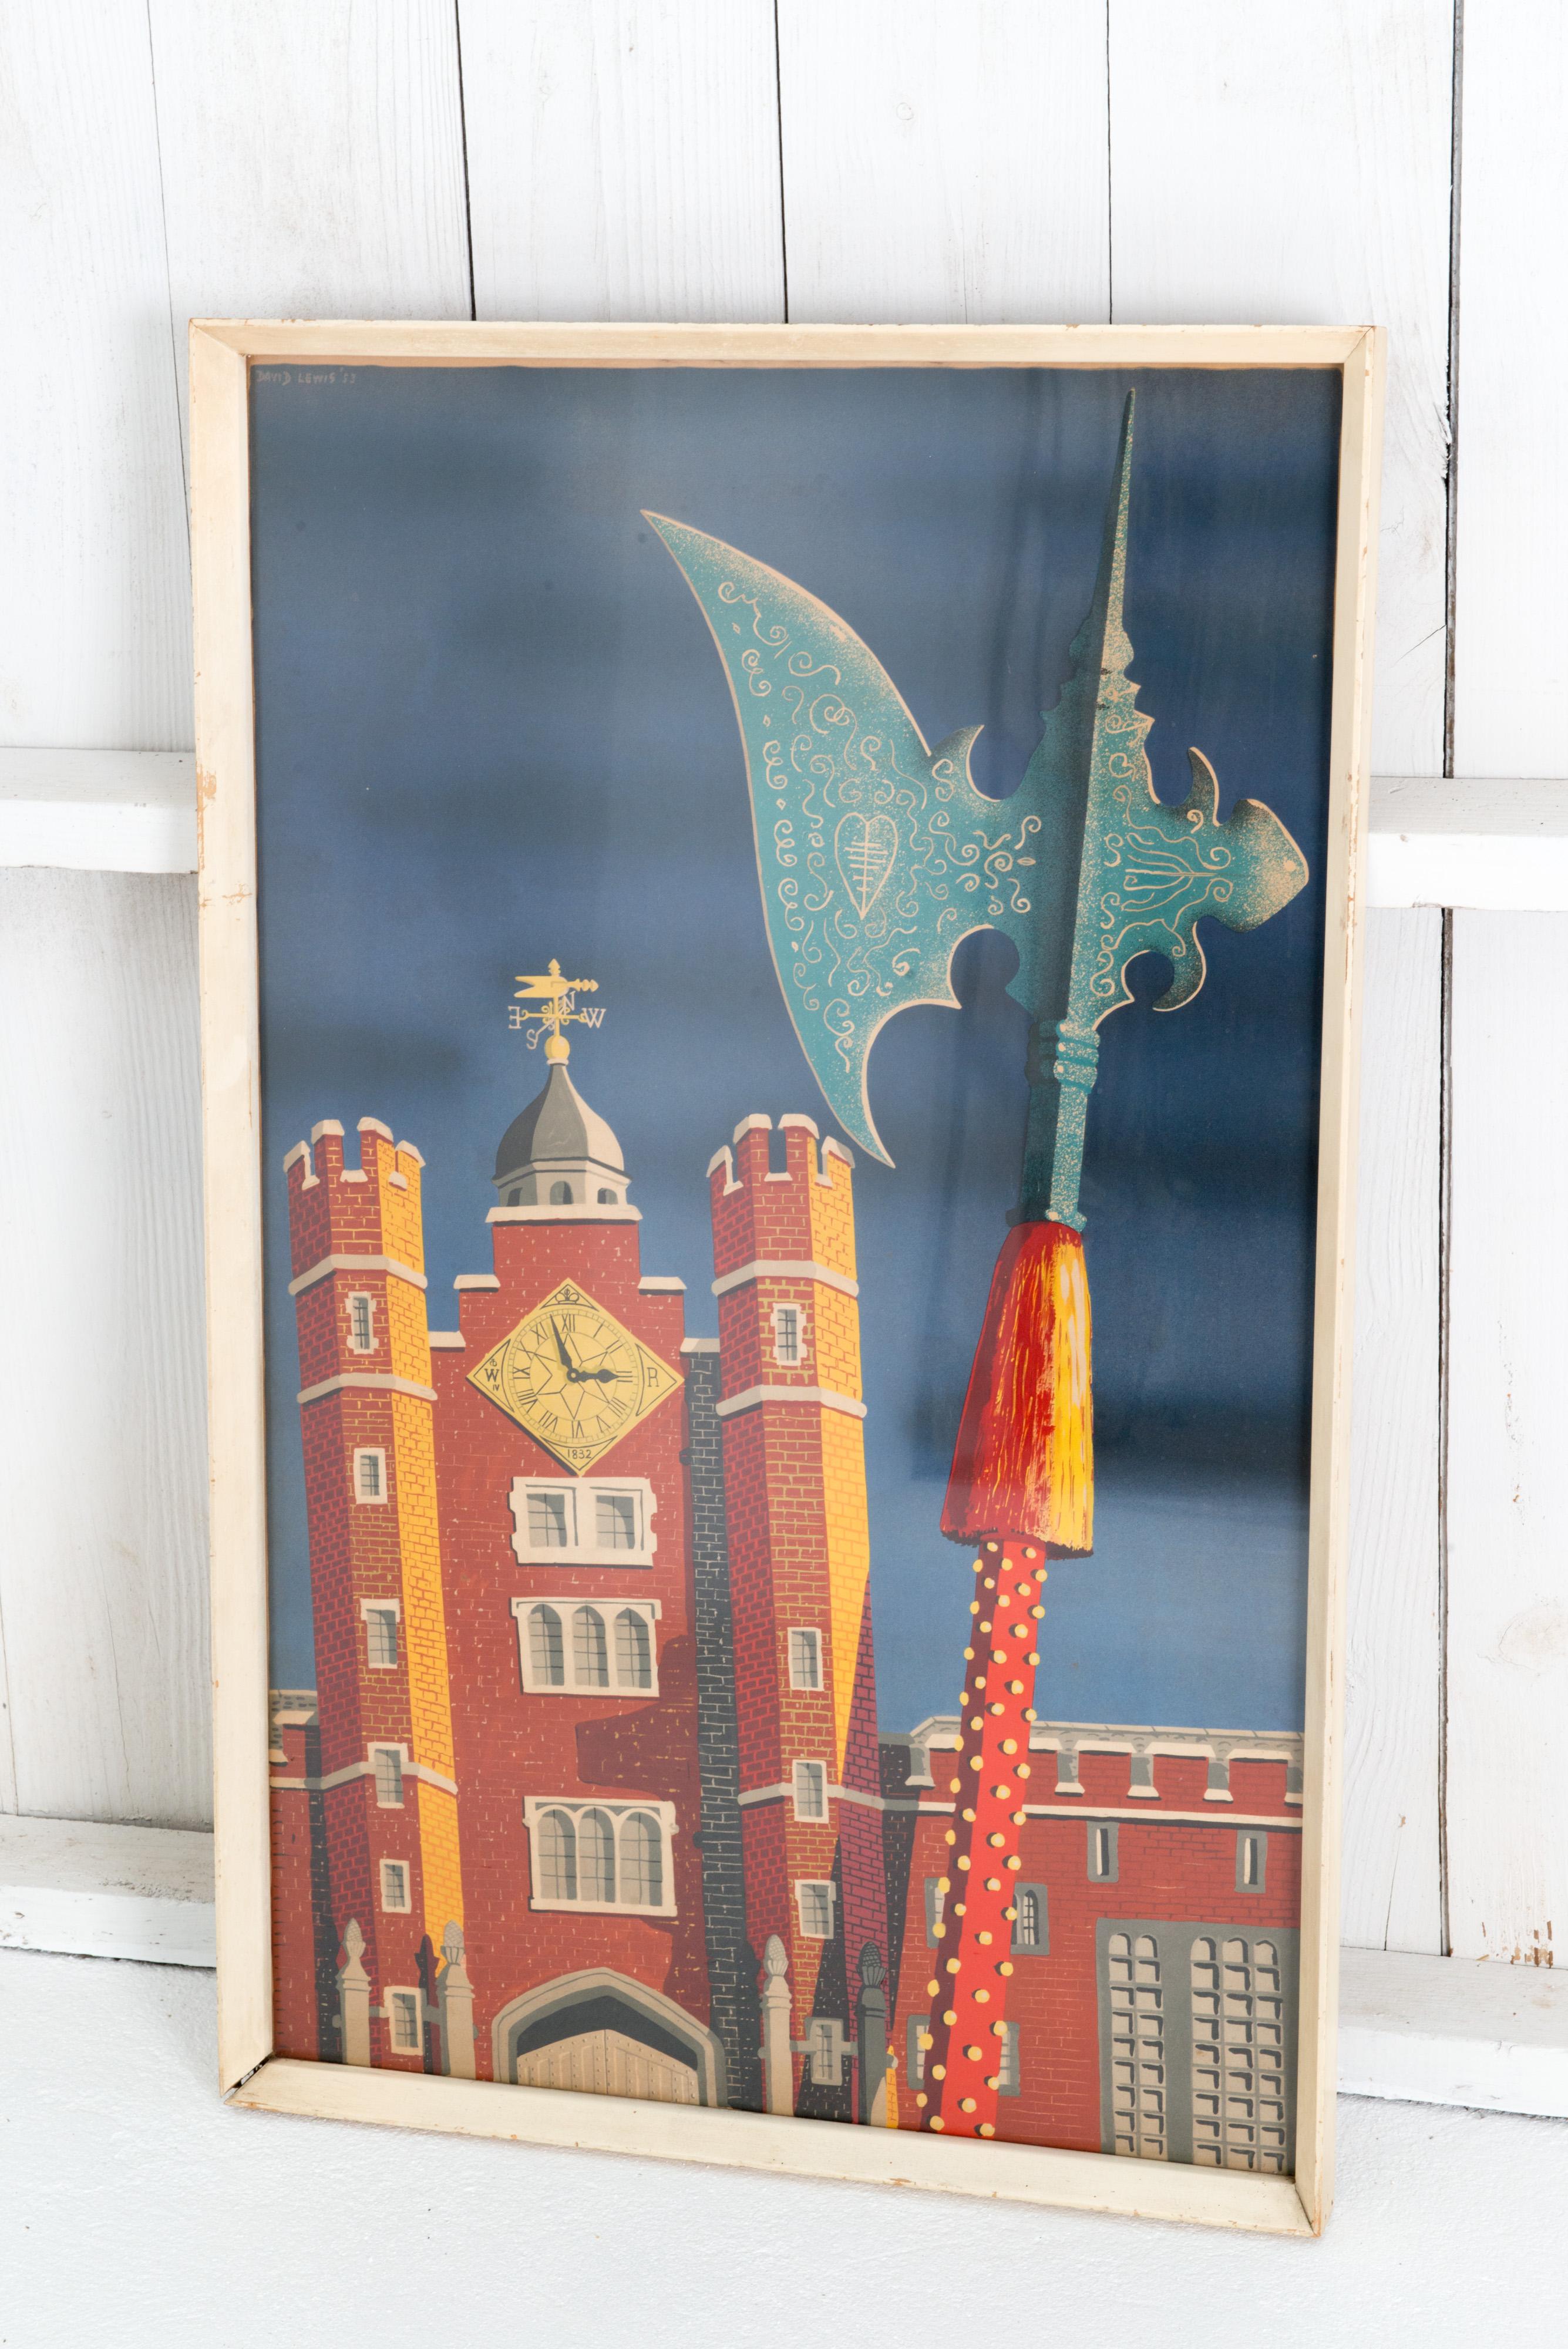 Affiche de voyage lithographique signée de l'illustrateur David Lewis pour le Royal London St. James Palace. L'affiche représente la tour de l'horloge en briques rouges du palais St James et une hache de guerre médiévale élaborée sur un riche fond